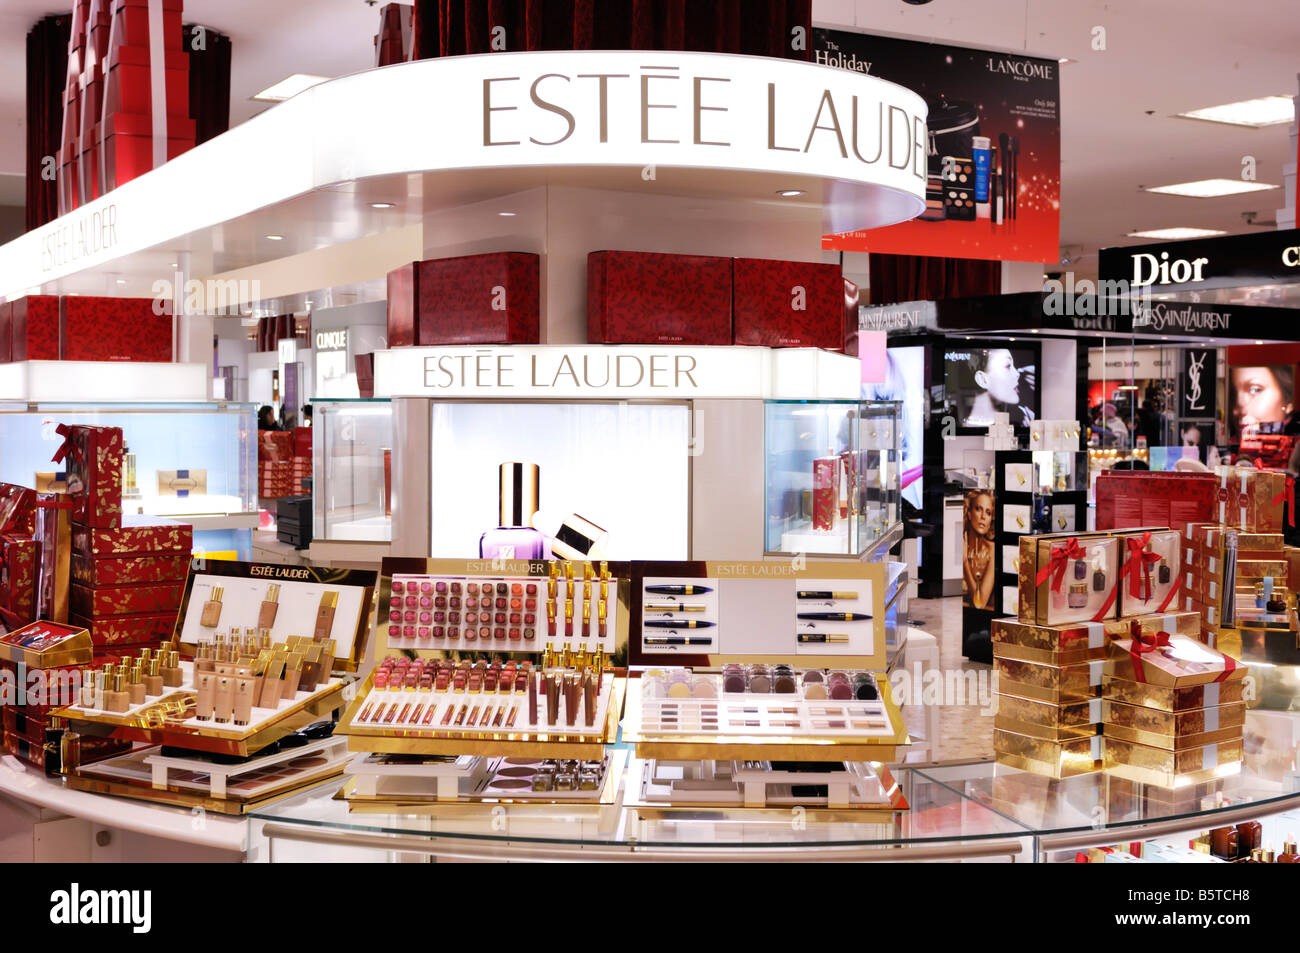 Estee Lauder Kosmetik Display in einem Einkaufszentrum Stockfoto